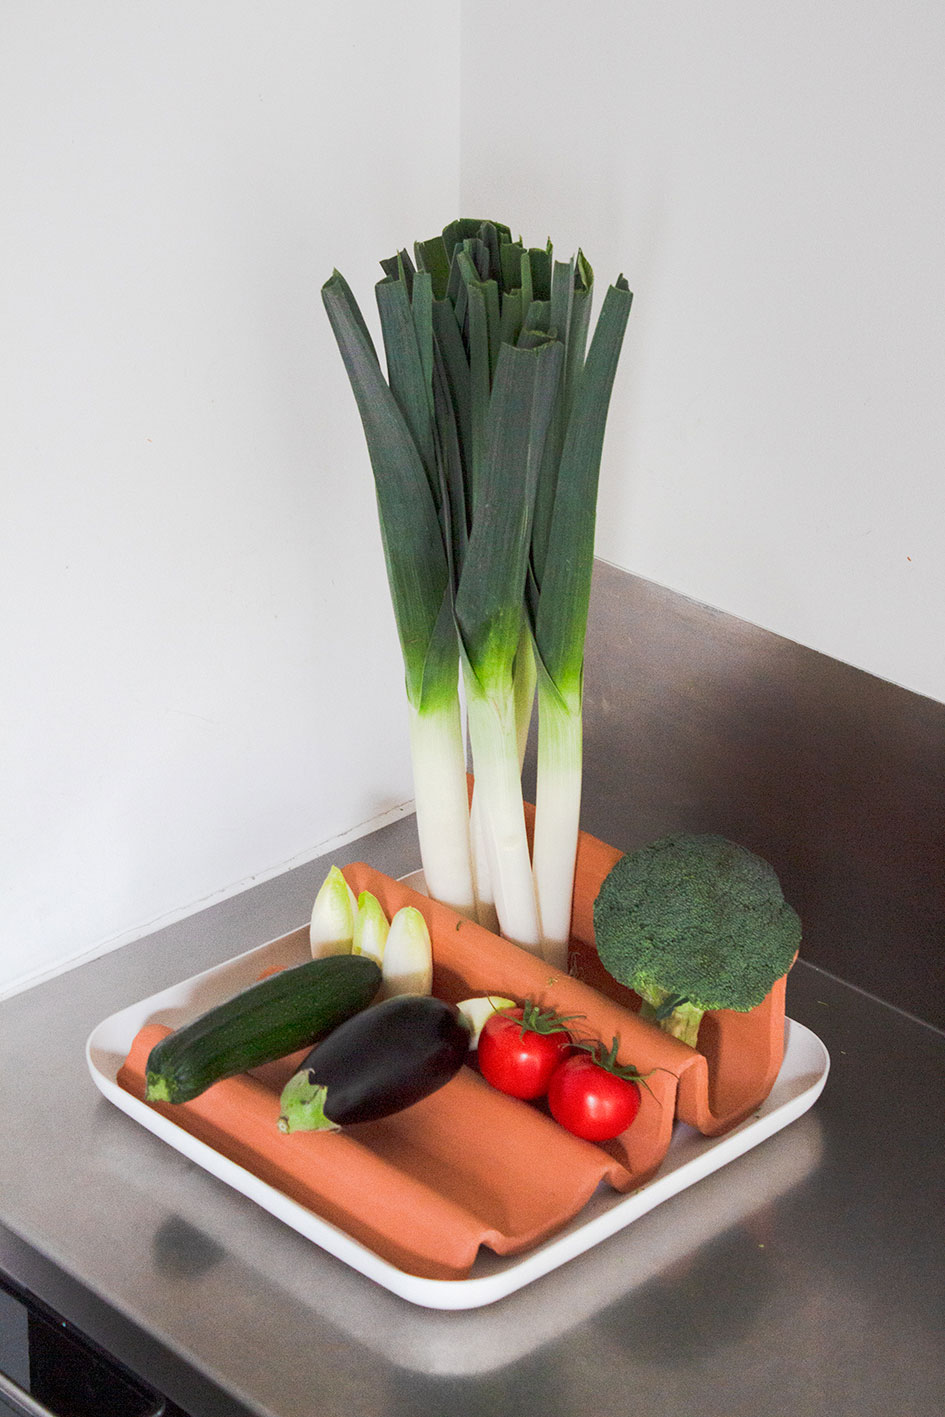 Frigo afin de conserver ses fruits et légumes en dehors du réfrigérateur - céramique - moulage de plaques - 35 x 35 cm - 2019